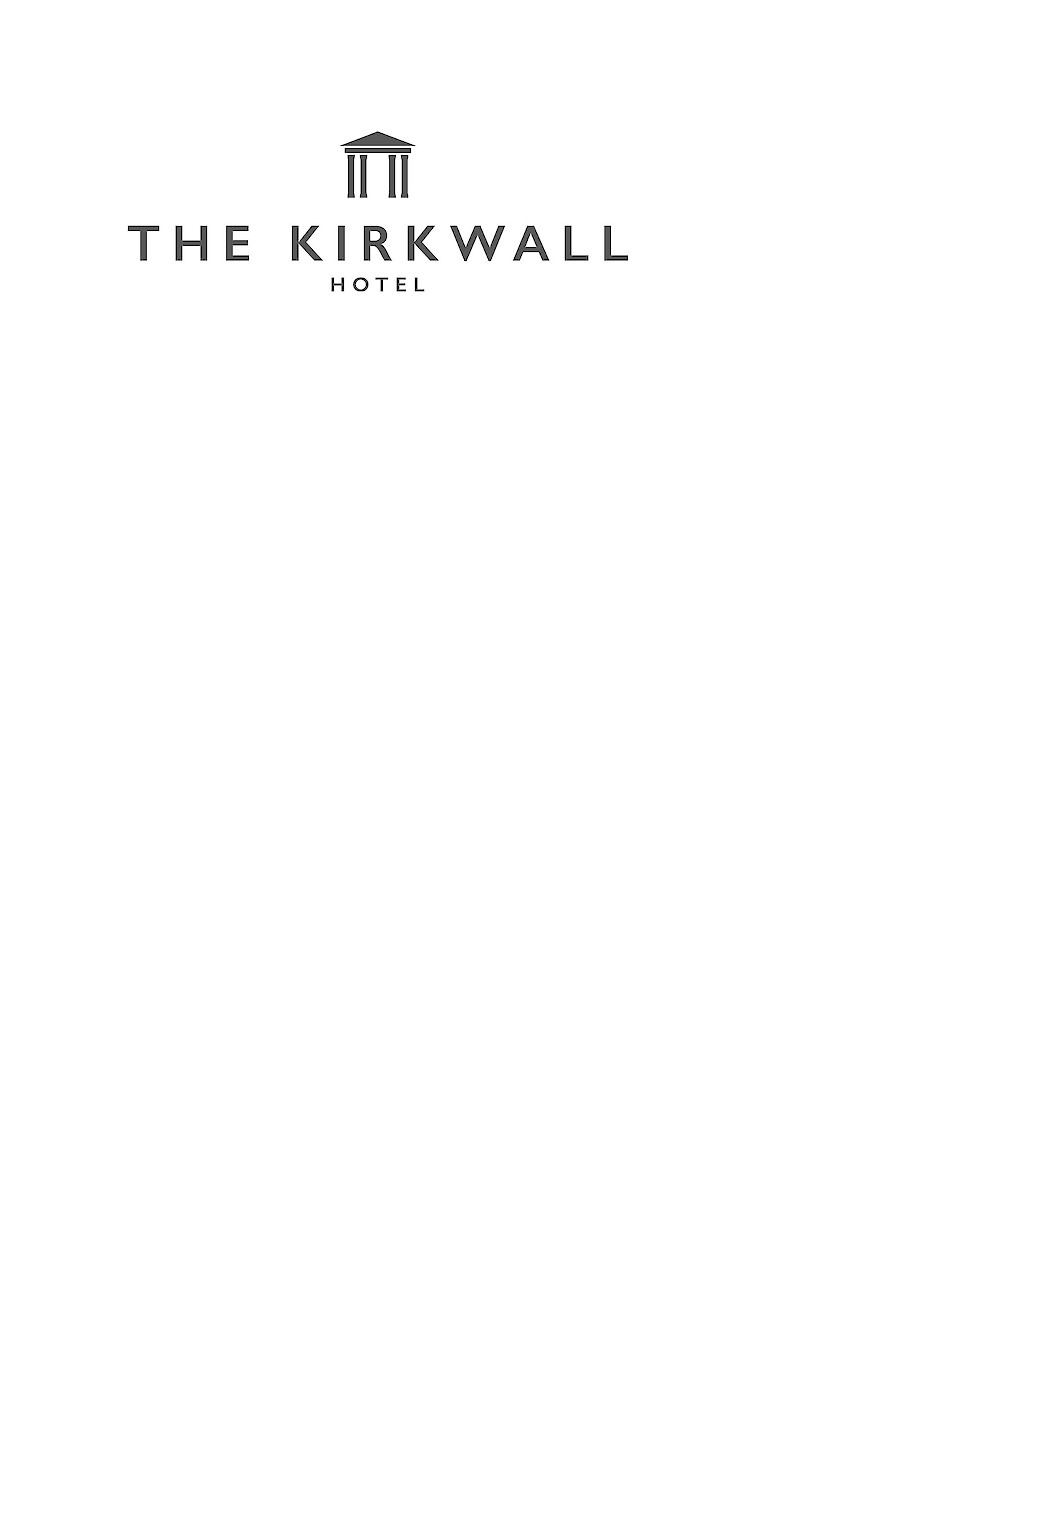 The Kirkwall Hotel Logo